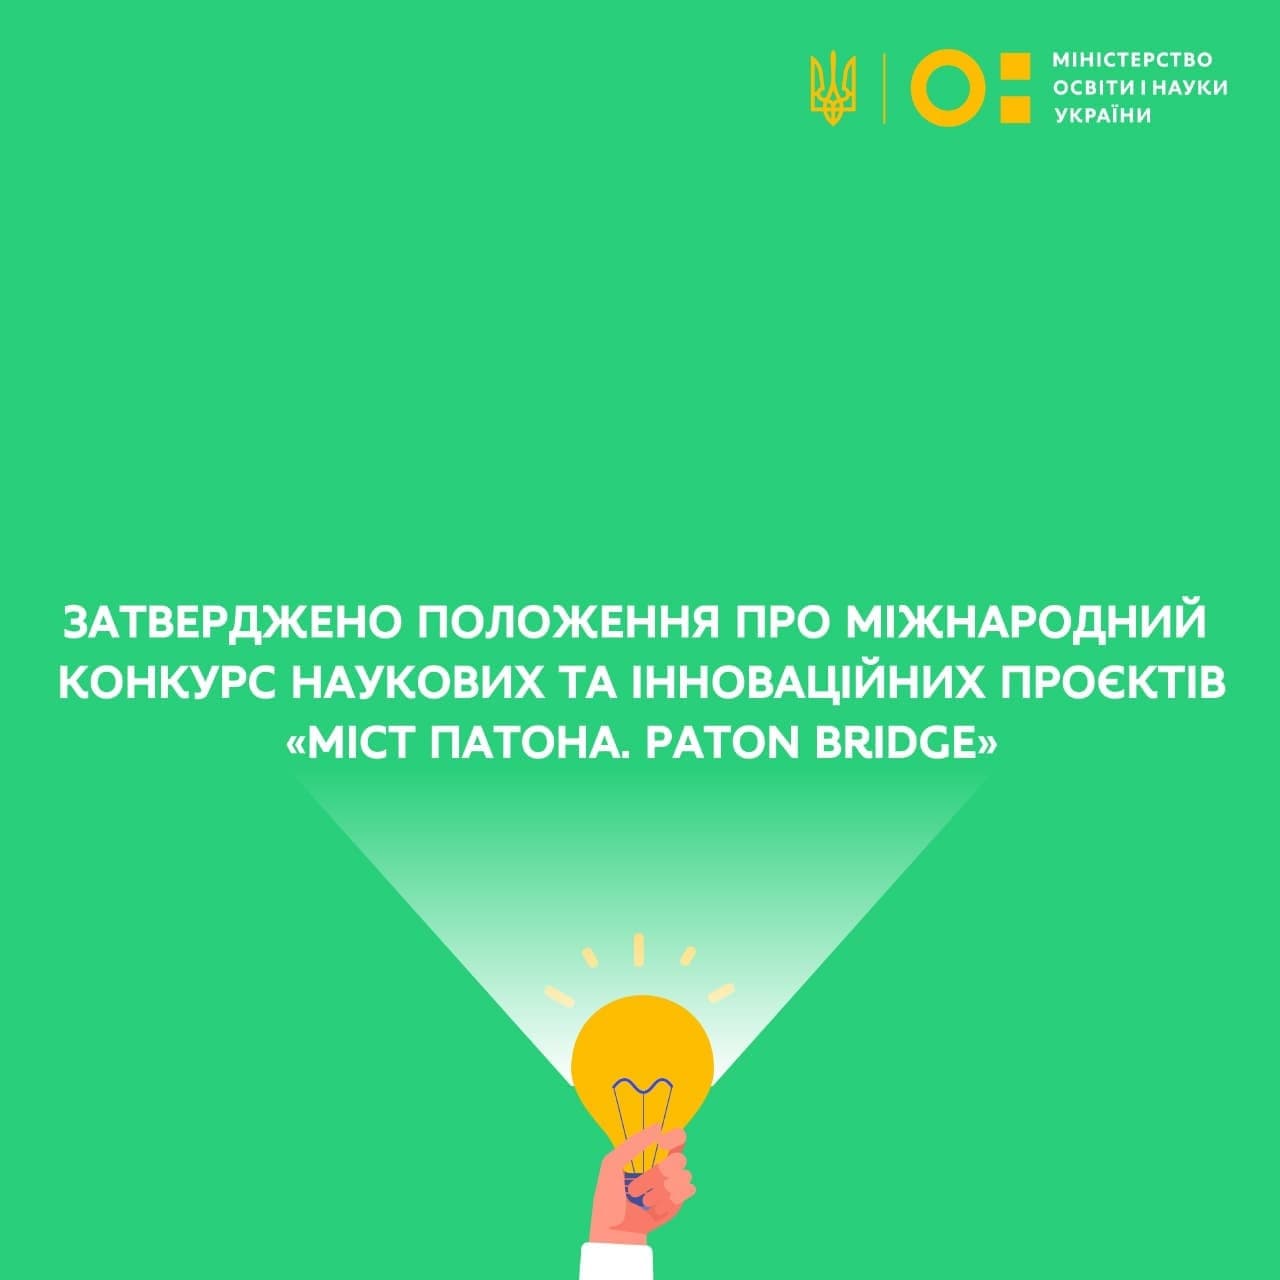 Положення про міжнародний конкурс наукових та інноваційних проєктів «МІСТ ПАТОНА. PATON BRIDGE»